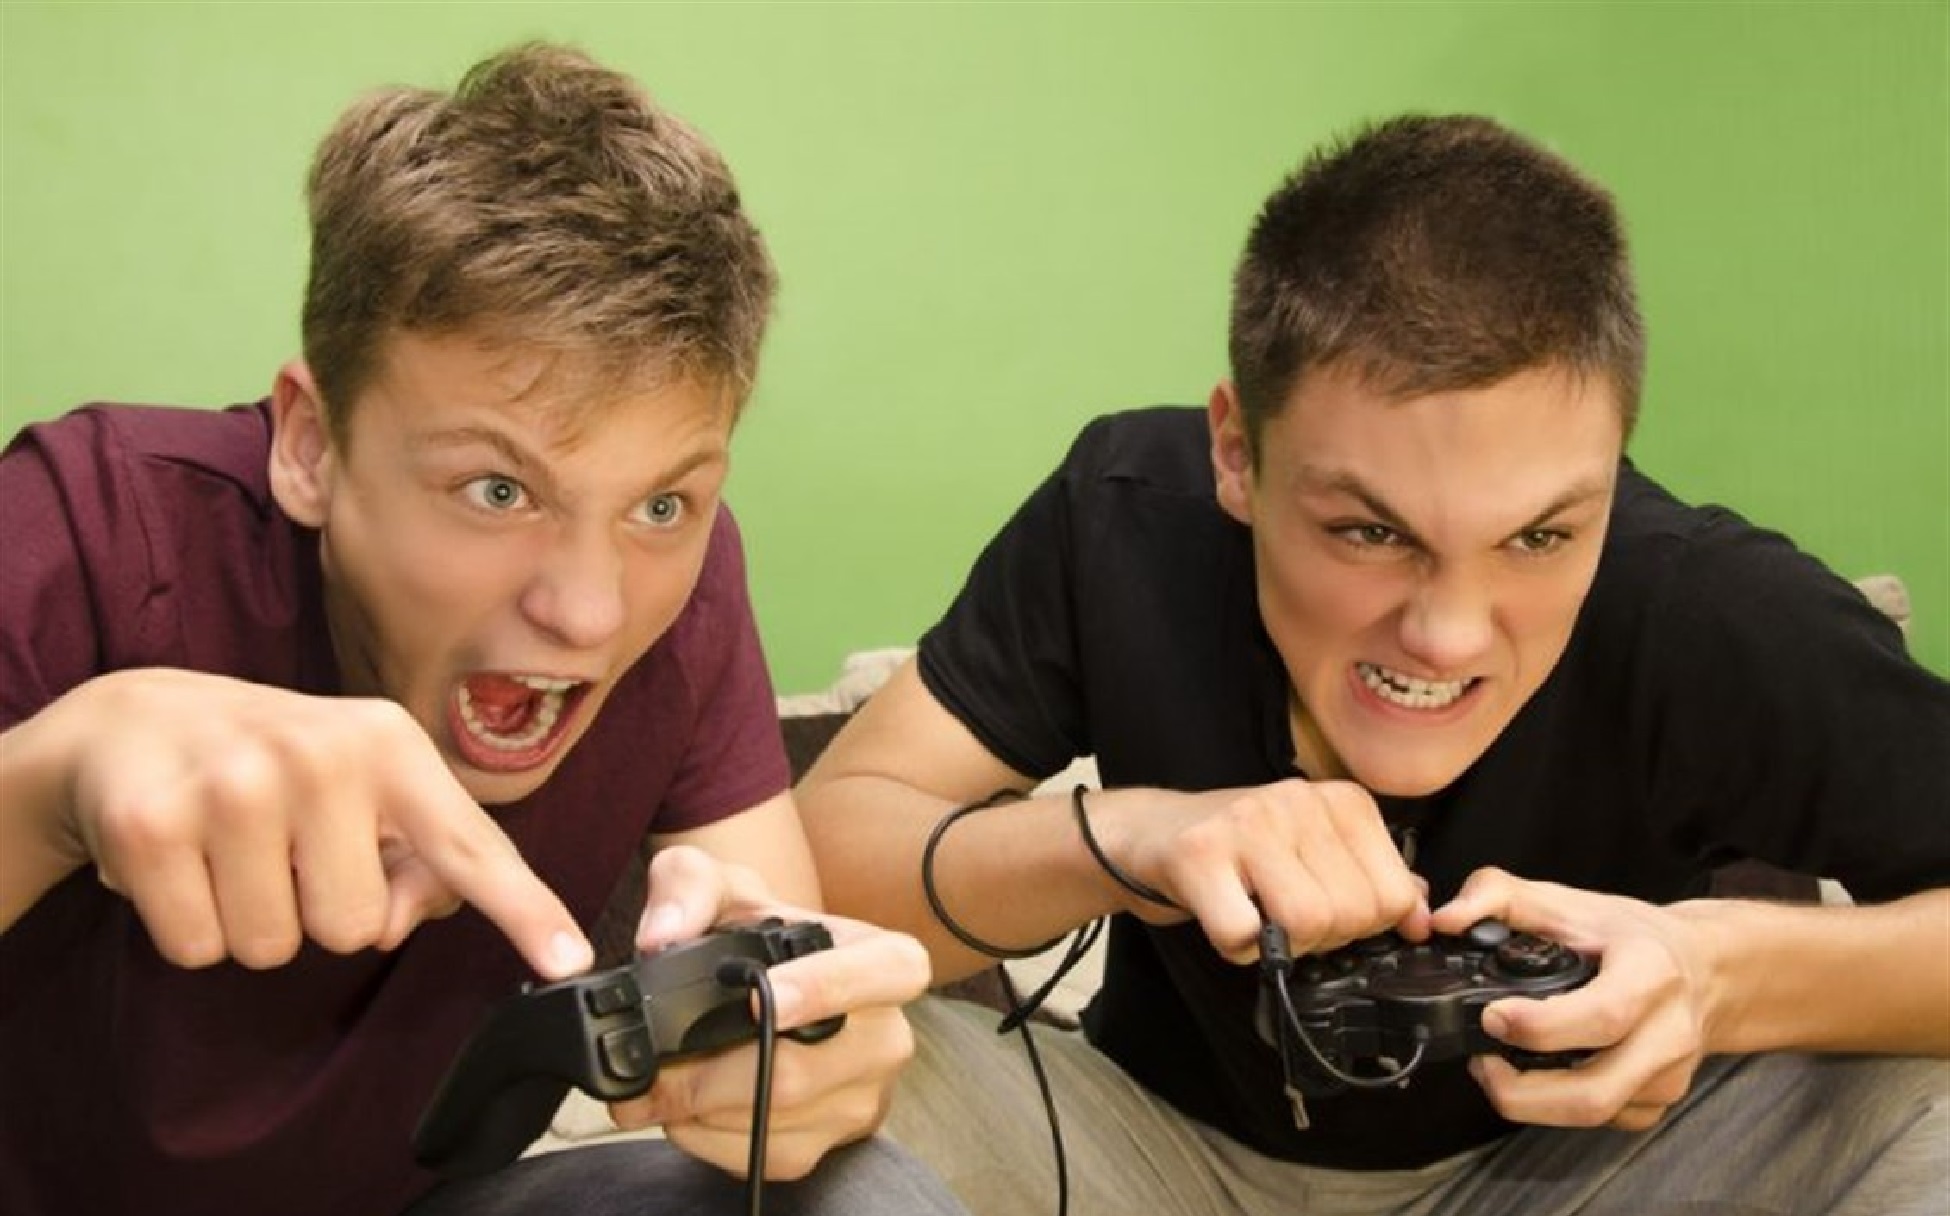 Компьютерные игры группа. Влияние компьютерных игр на агрессивность. Злой подросток. Дети играющие в компьютерные игры. Агрессия из за компьютерных игр.